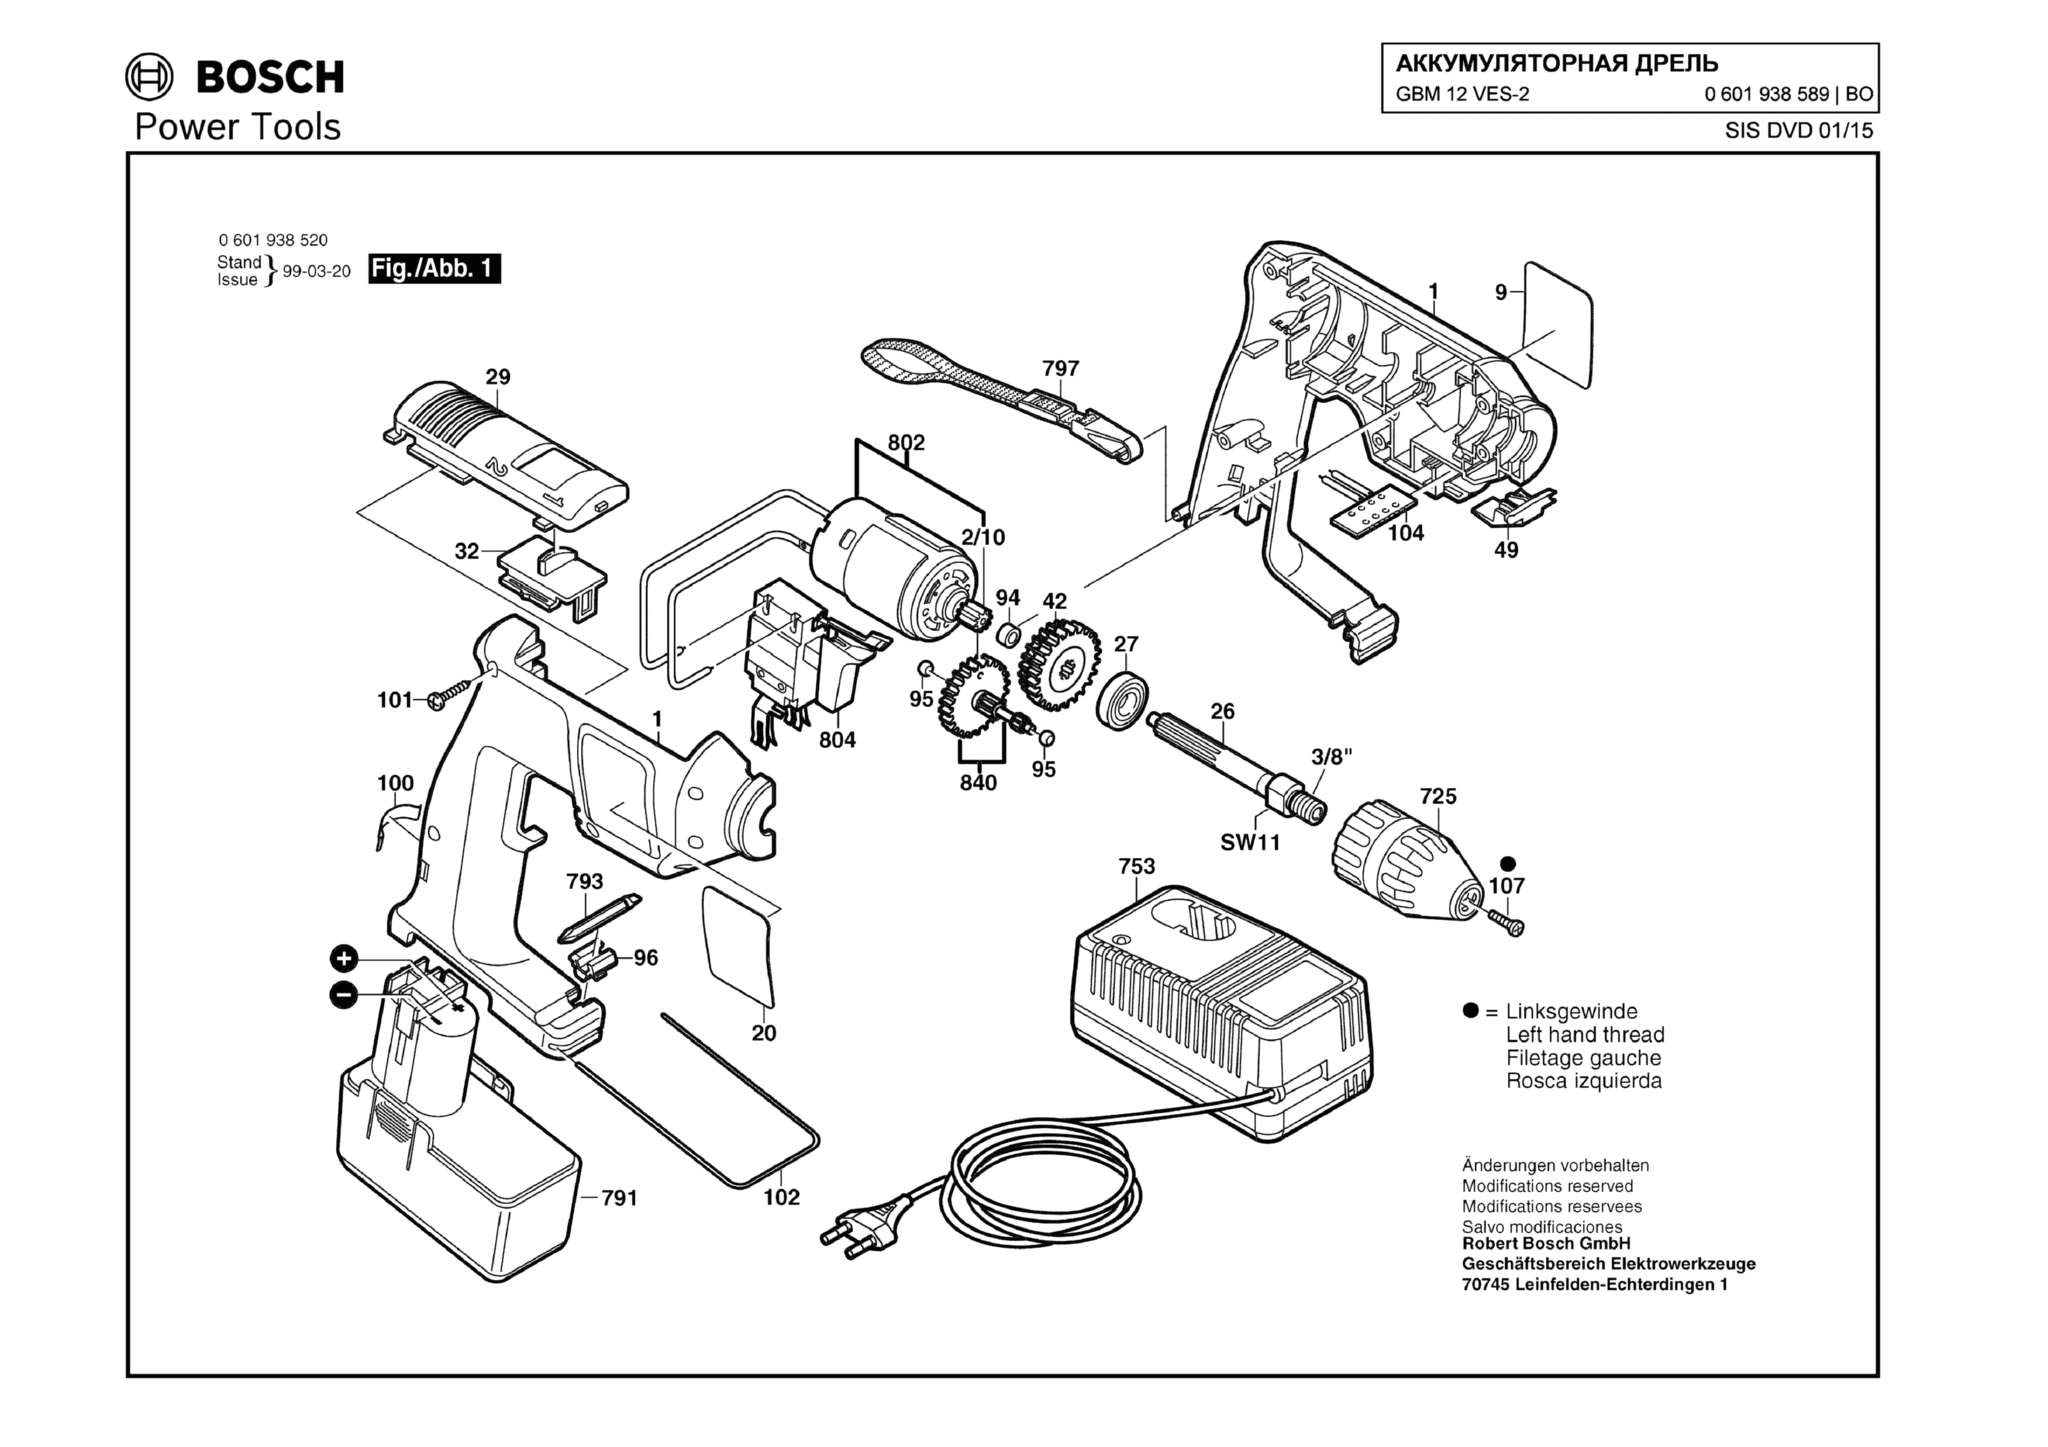 Запчасти, схема и деталировка Bosch GBM 12 VES-2 (ТИП 0601938589)